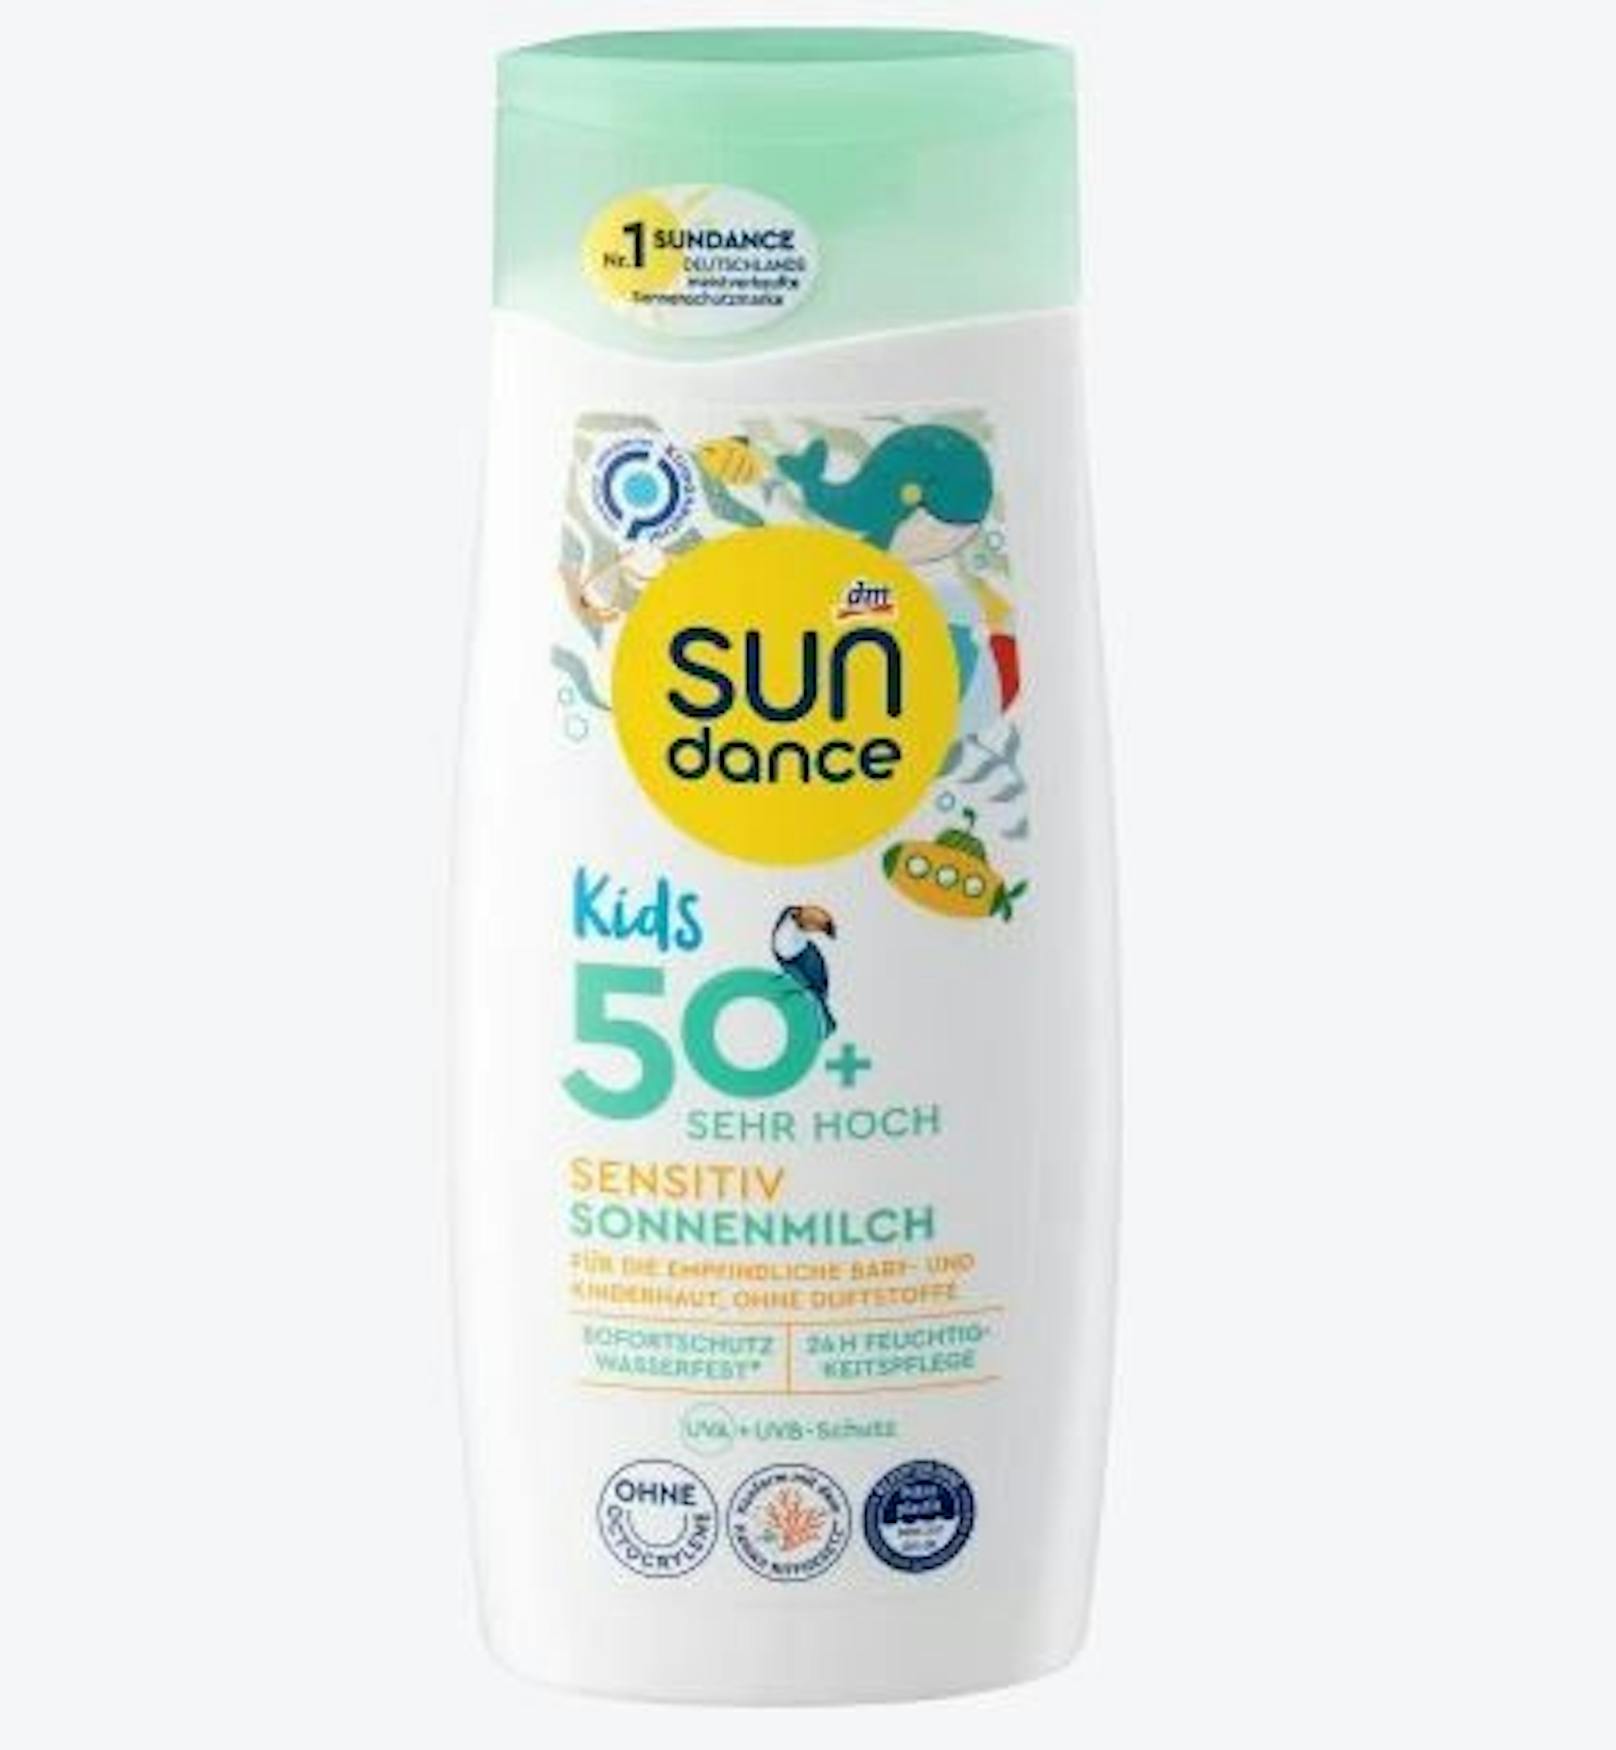 Auch die dm-Eigenmarke Sundance sensitiv Sonnenmilch Kids schneidet "sehr gut" ab. Chemische Filter schützen. Preis: 200ml für 5,75 Euro.